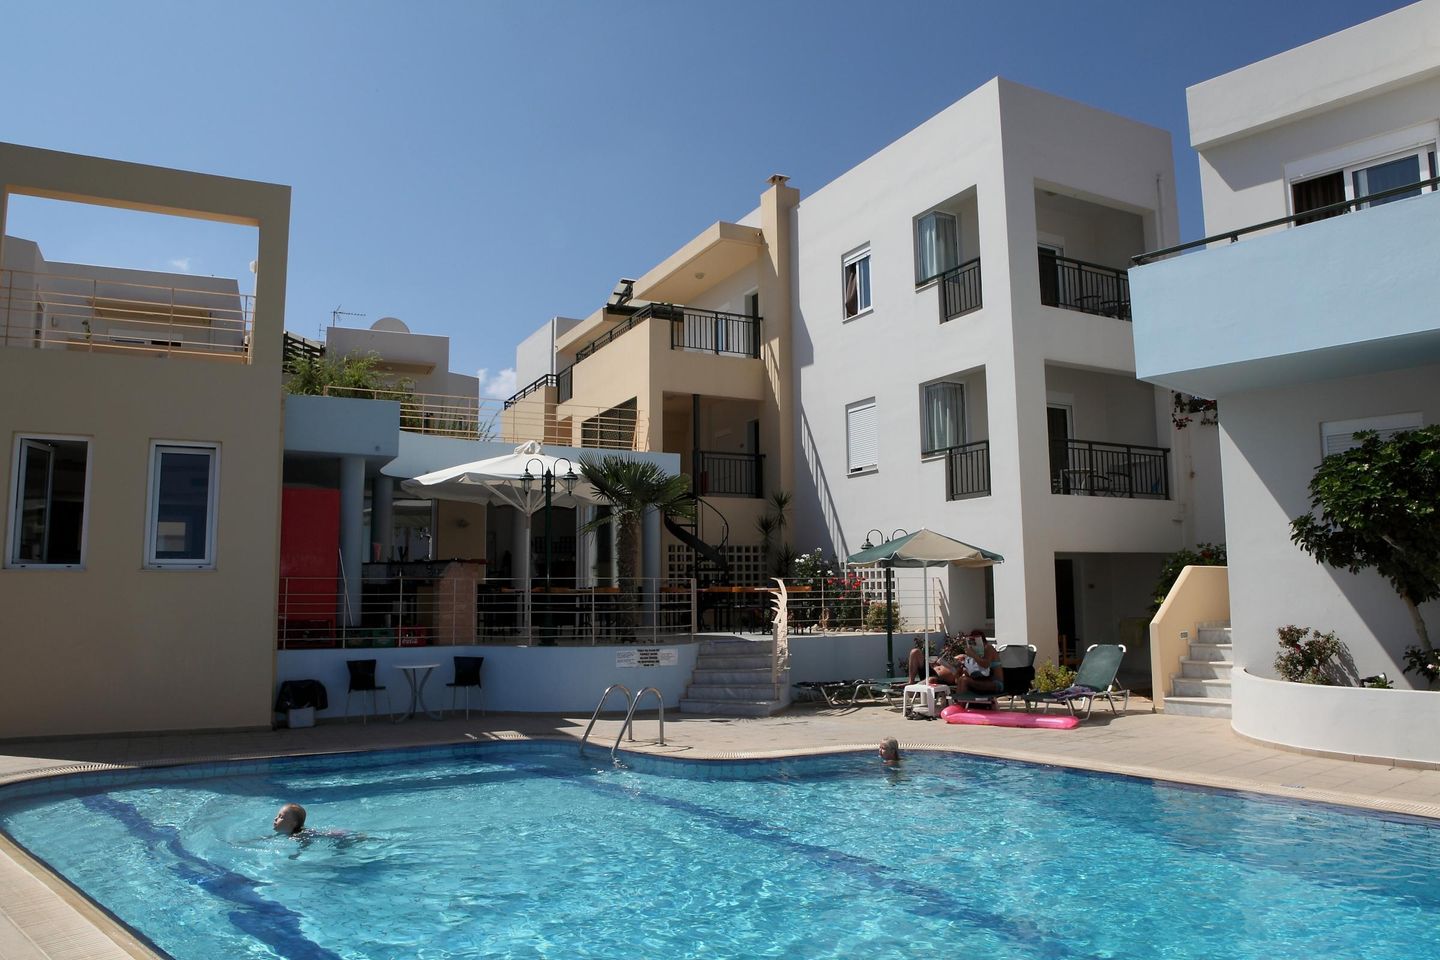 Ferienhausanlage mit Pool, nahe zum Meer, Wifi | S  in Griechenland